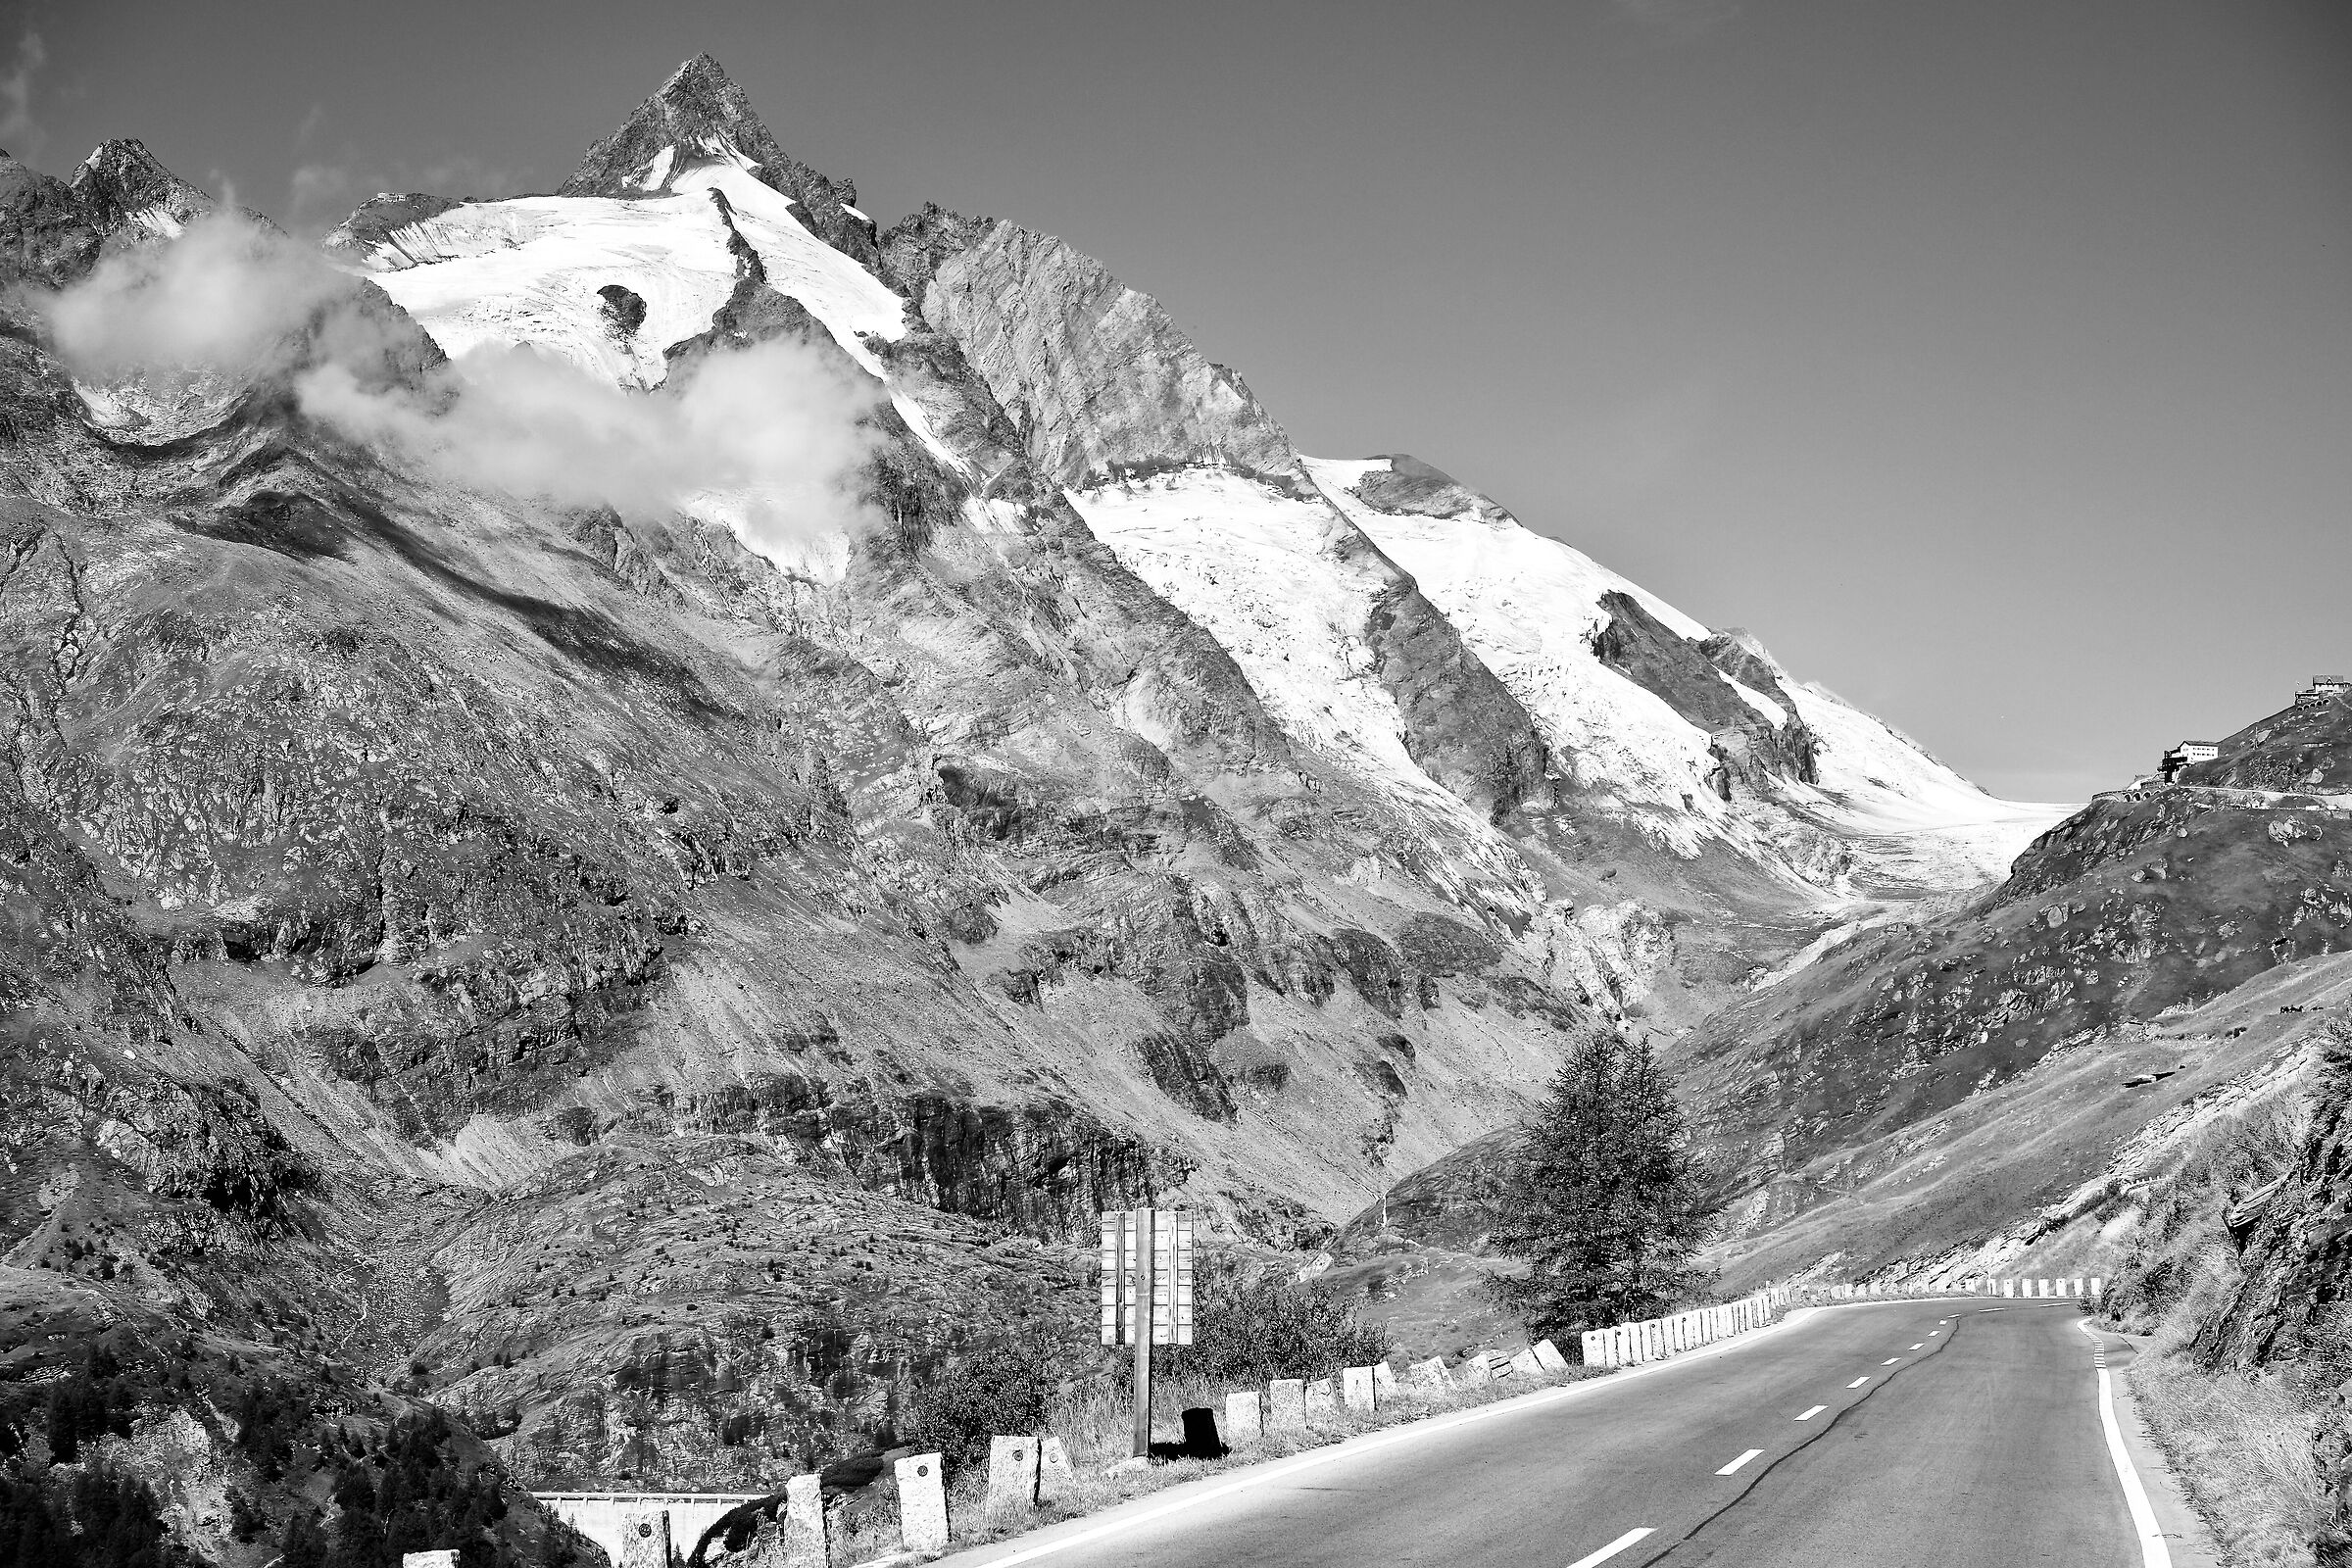 Alpine roads...